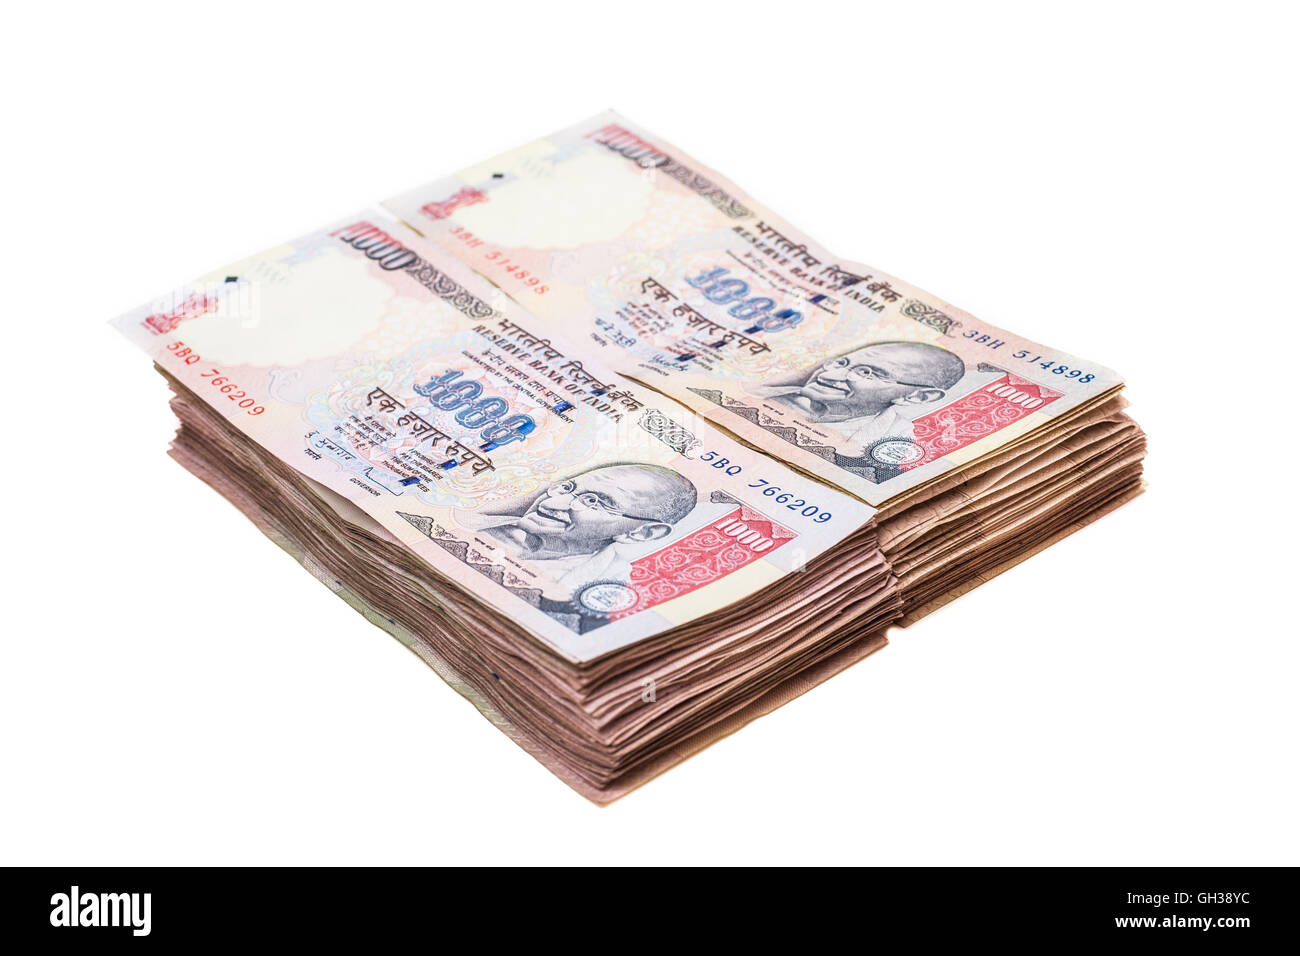 Stapel von tausend Rupien Noten (indische Währung). Stockfoto